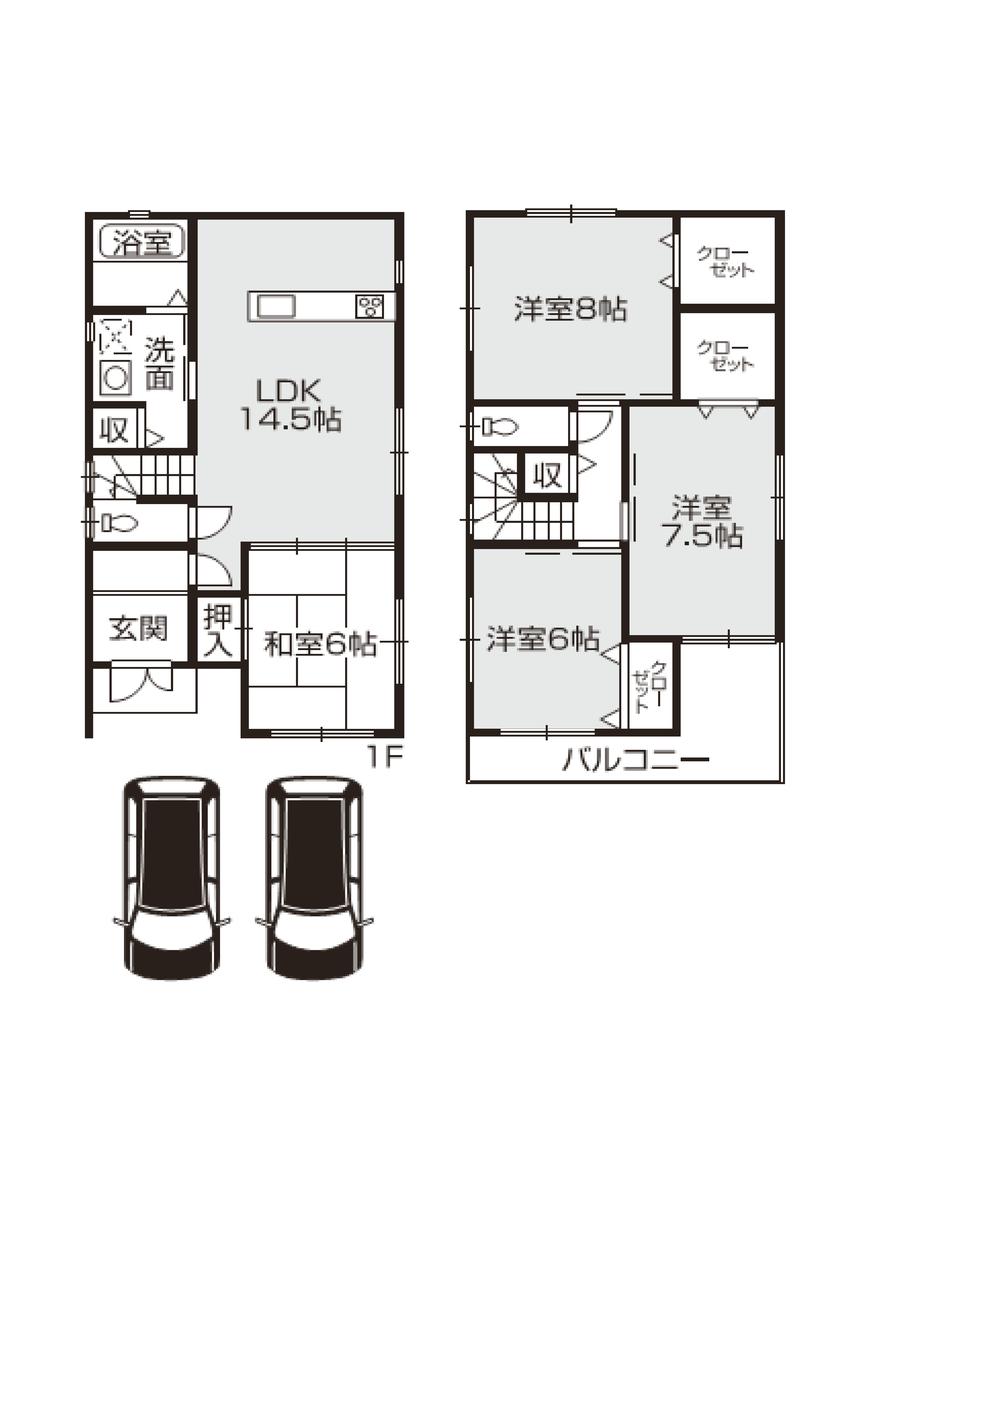 Floor plan. 23.8 million yen, 4LDK, Land area 97.44 sq m , Building area 80 sq m